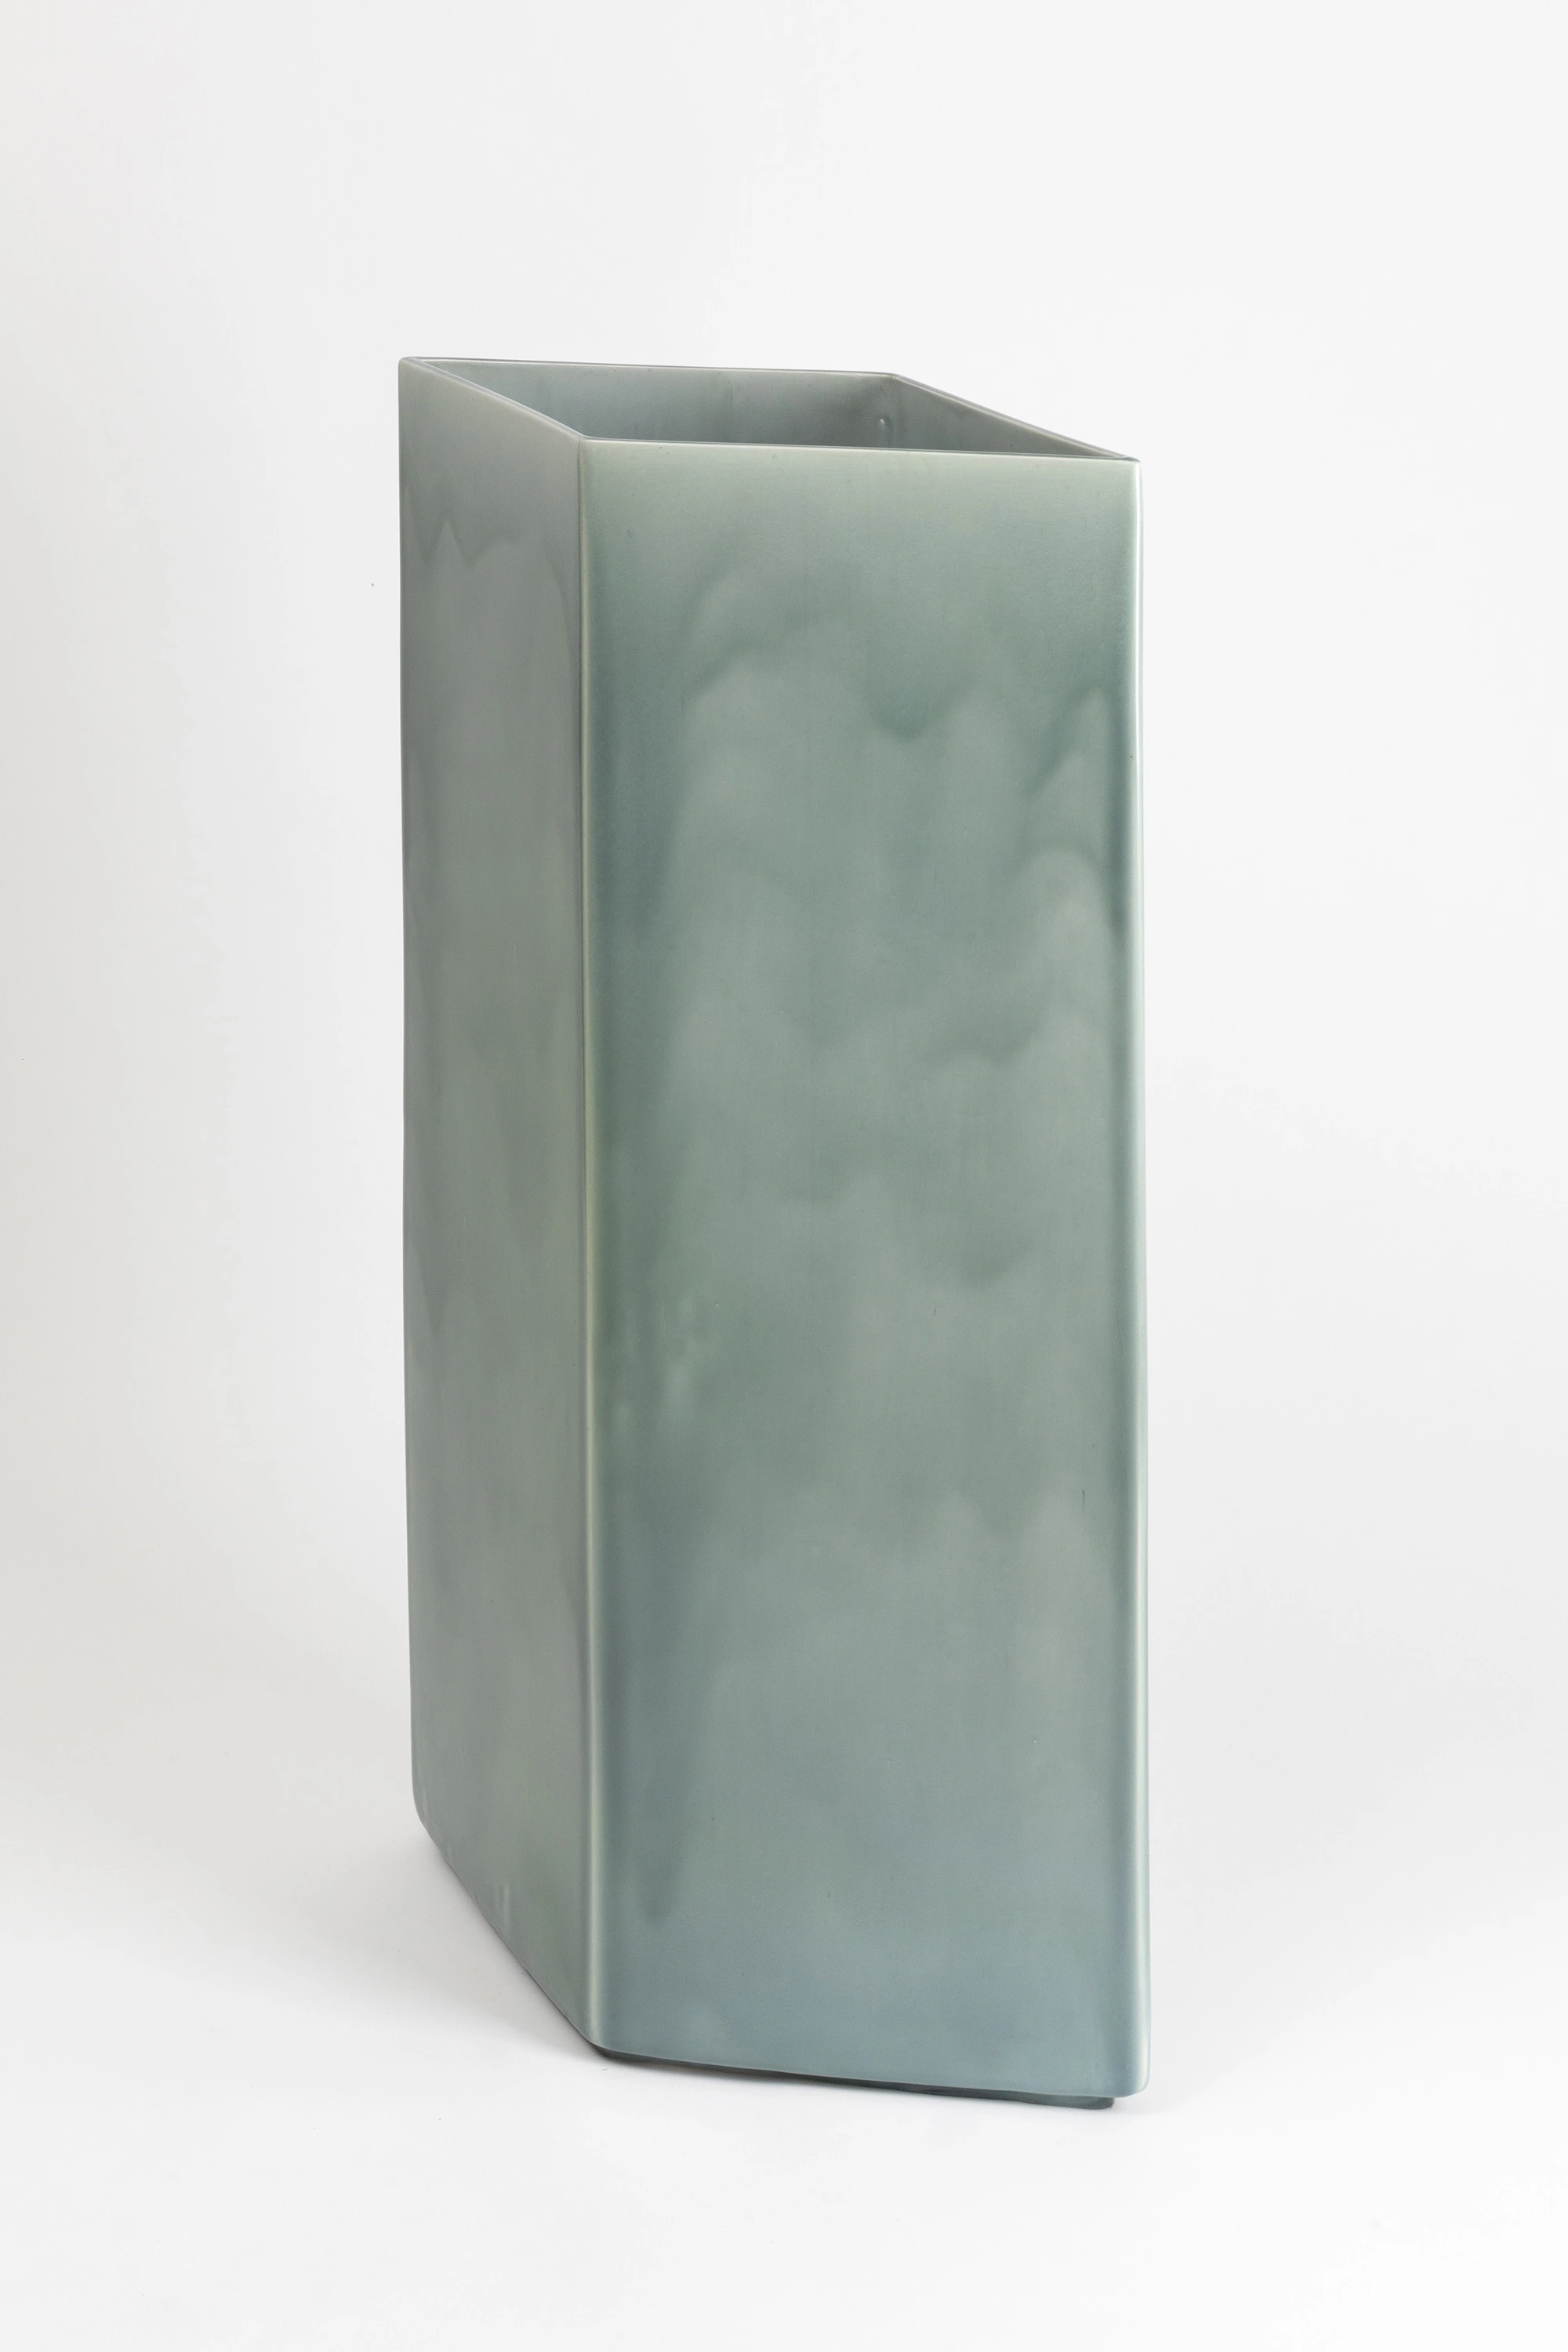 Vase Losange 84 blue - Ronan & Erwan Bouroullec - Vase - Galerie kreo